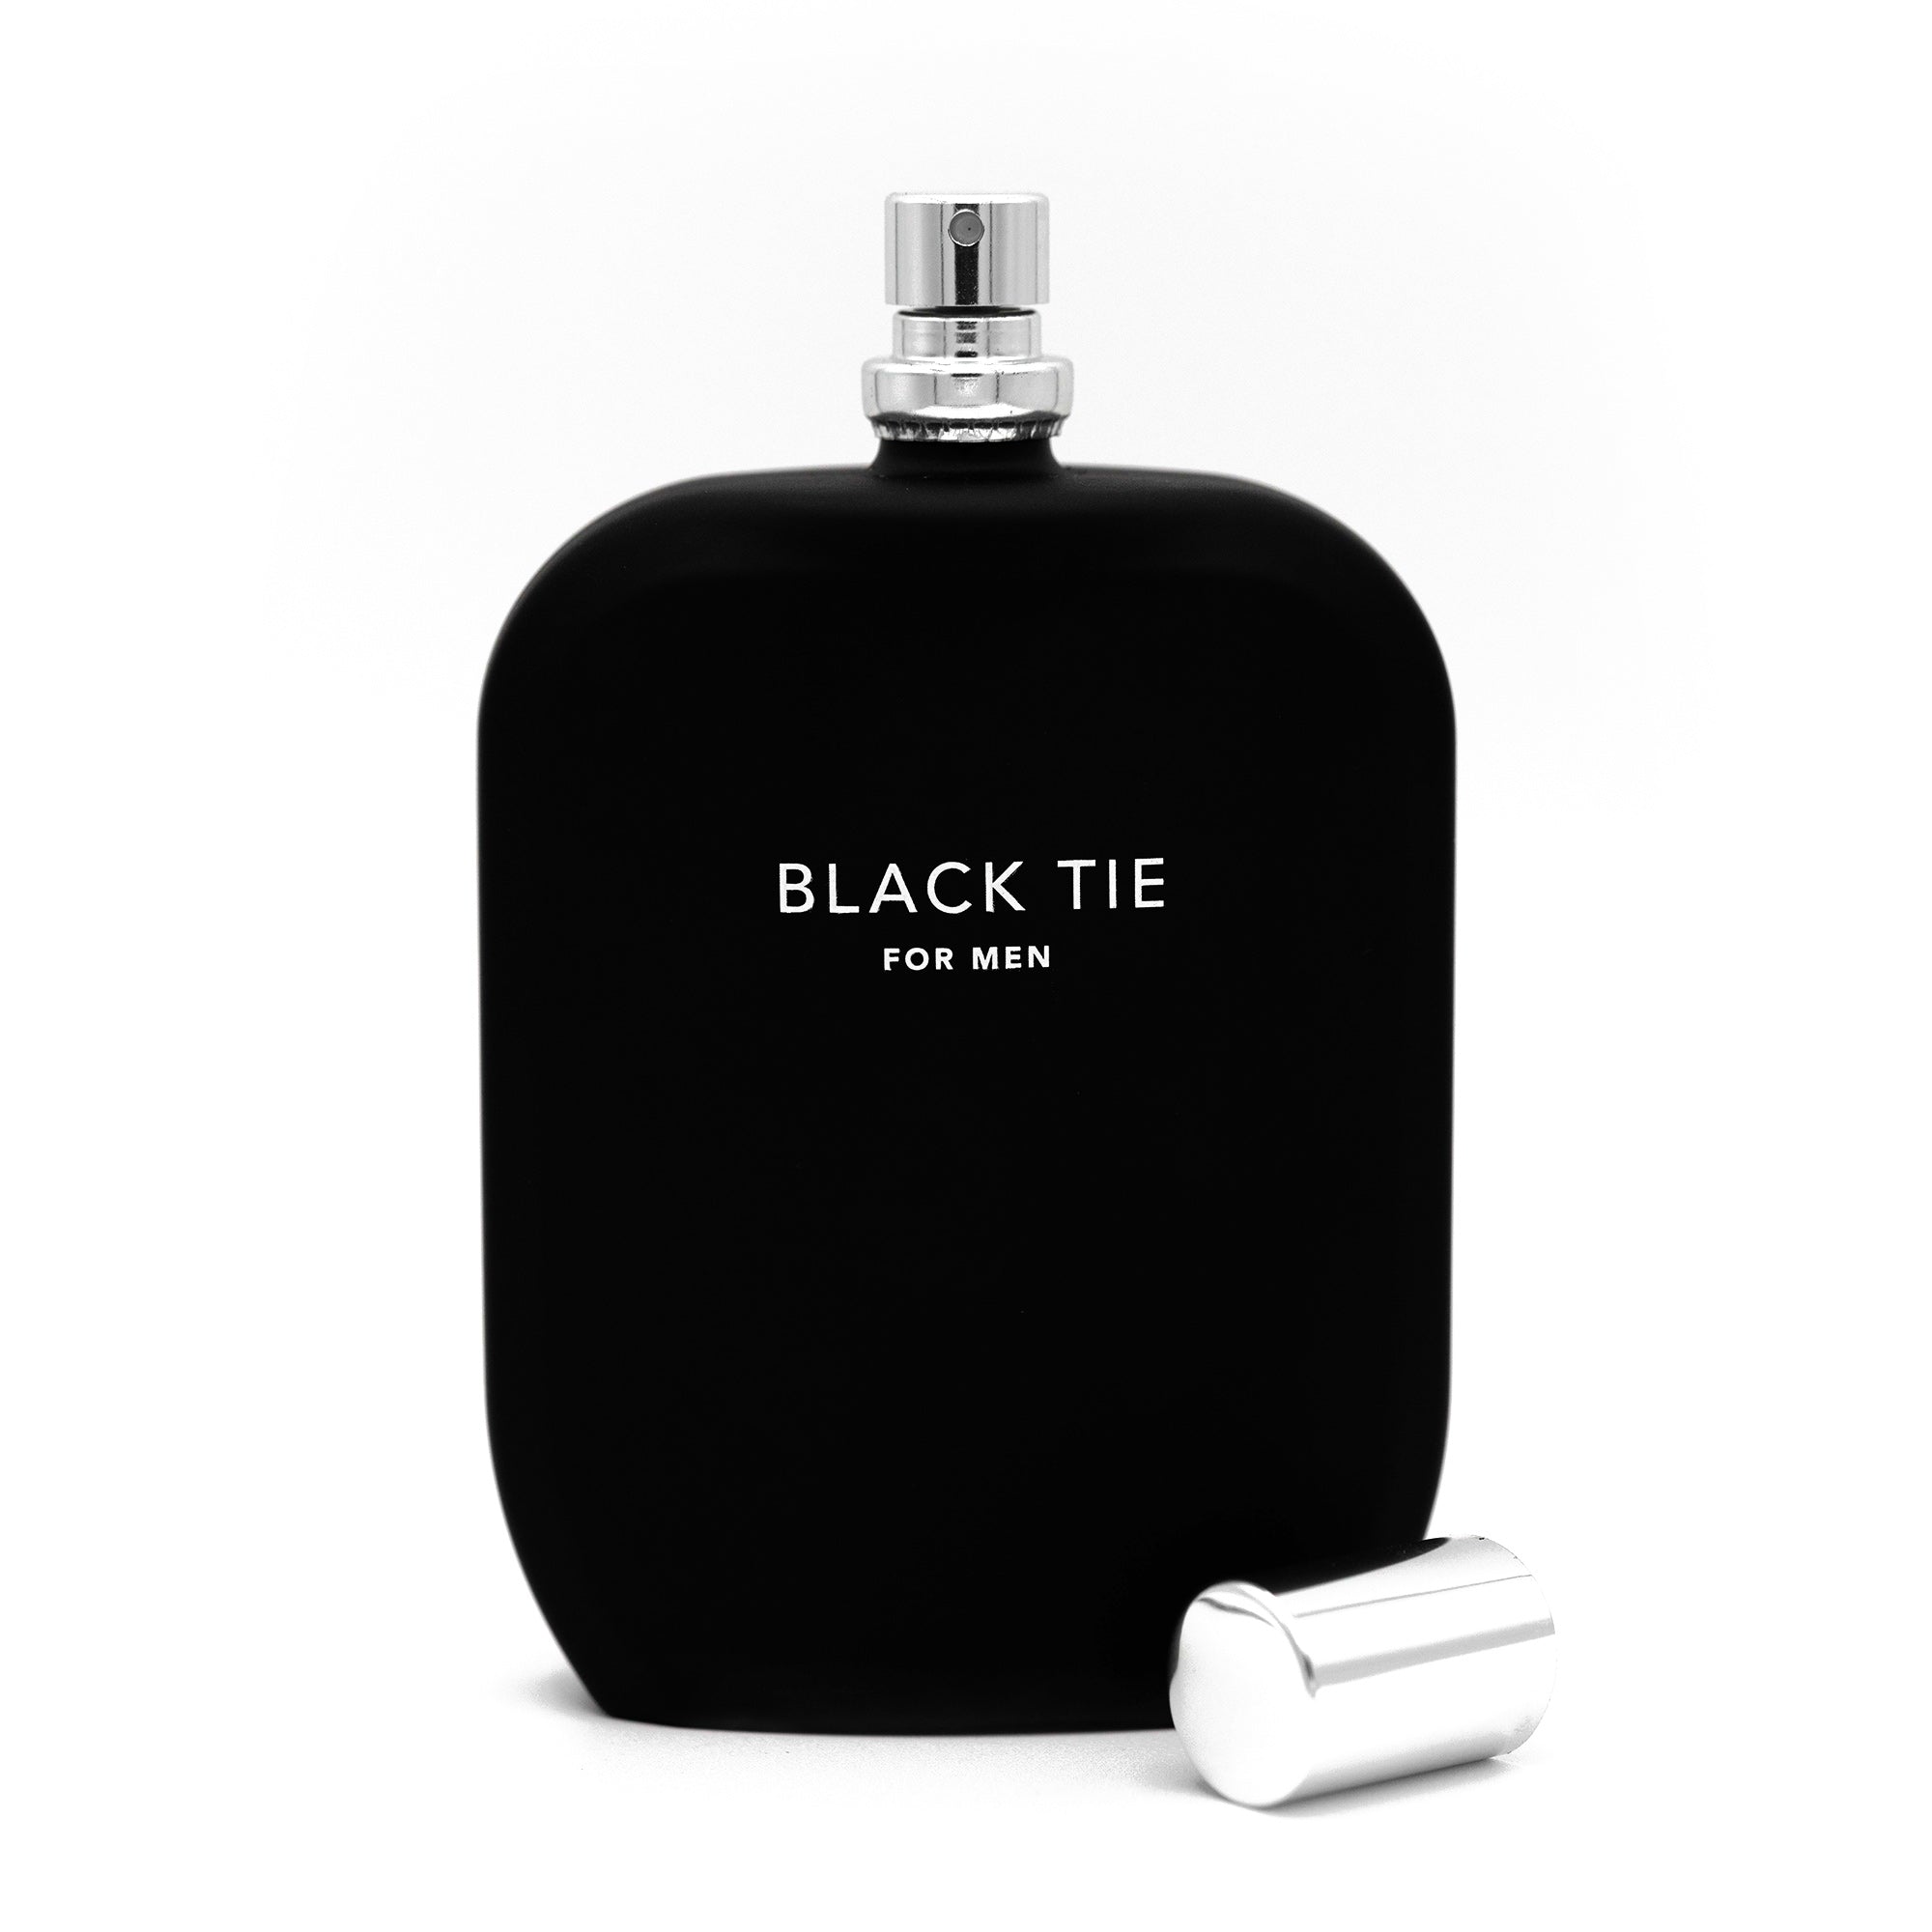 Black TIE fragrance bottle 100ml open cap